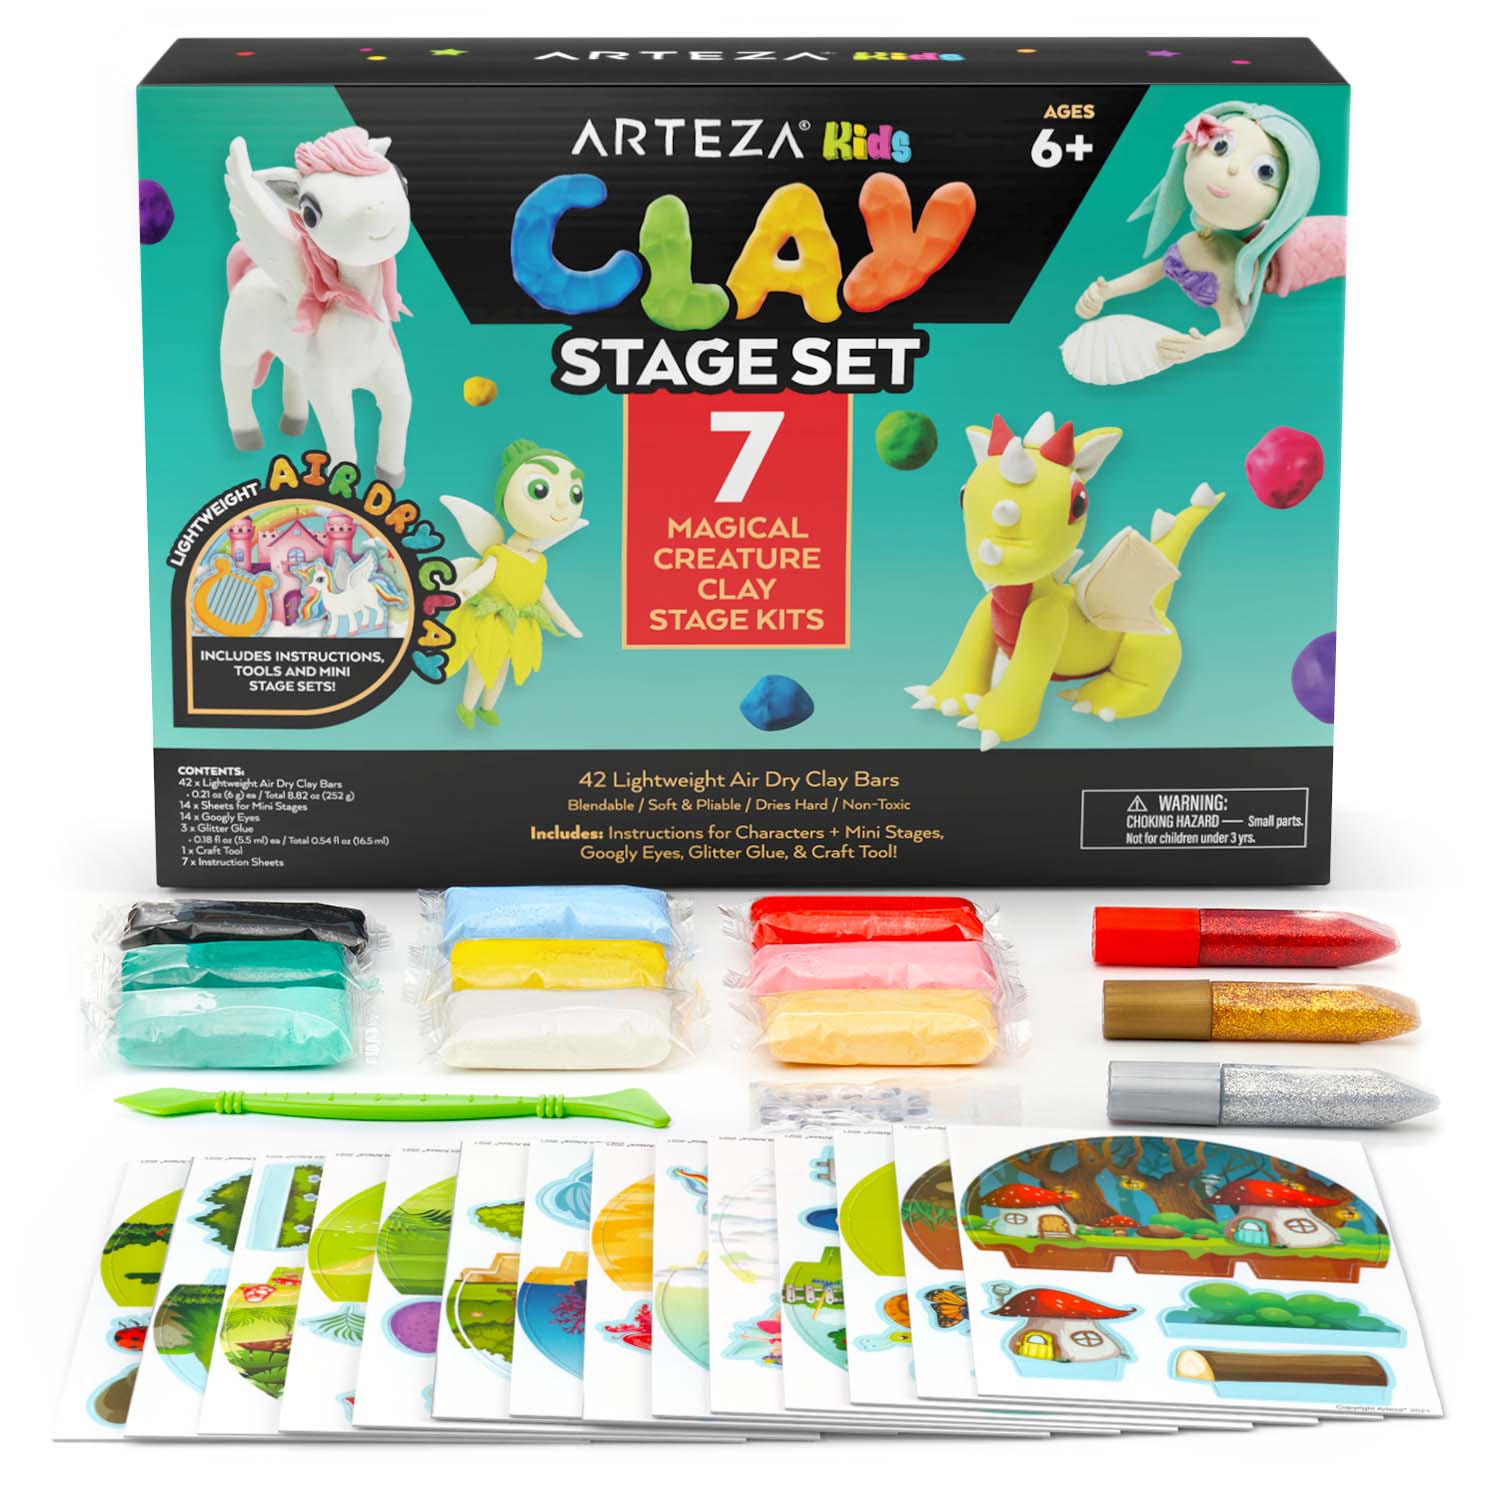 Arteza Kids Felt Craft Kit, Animals